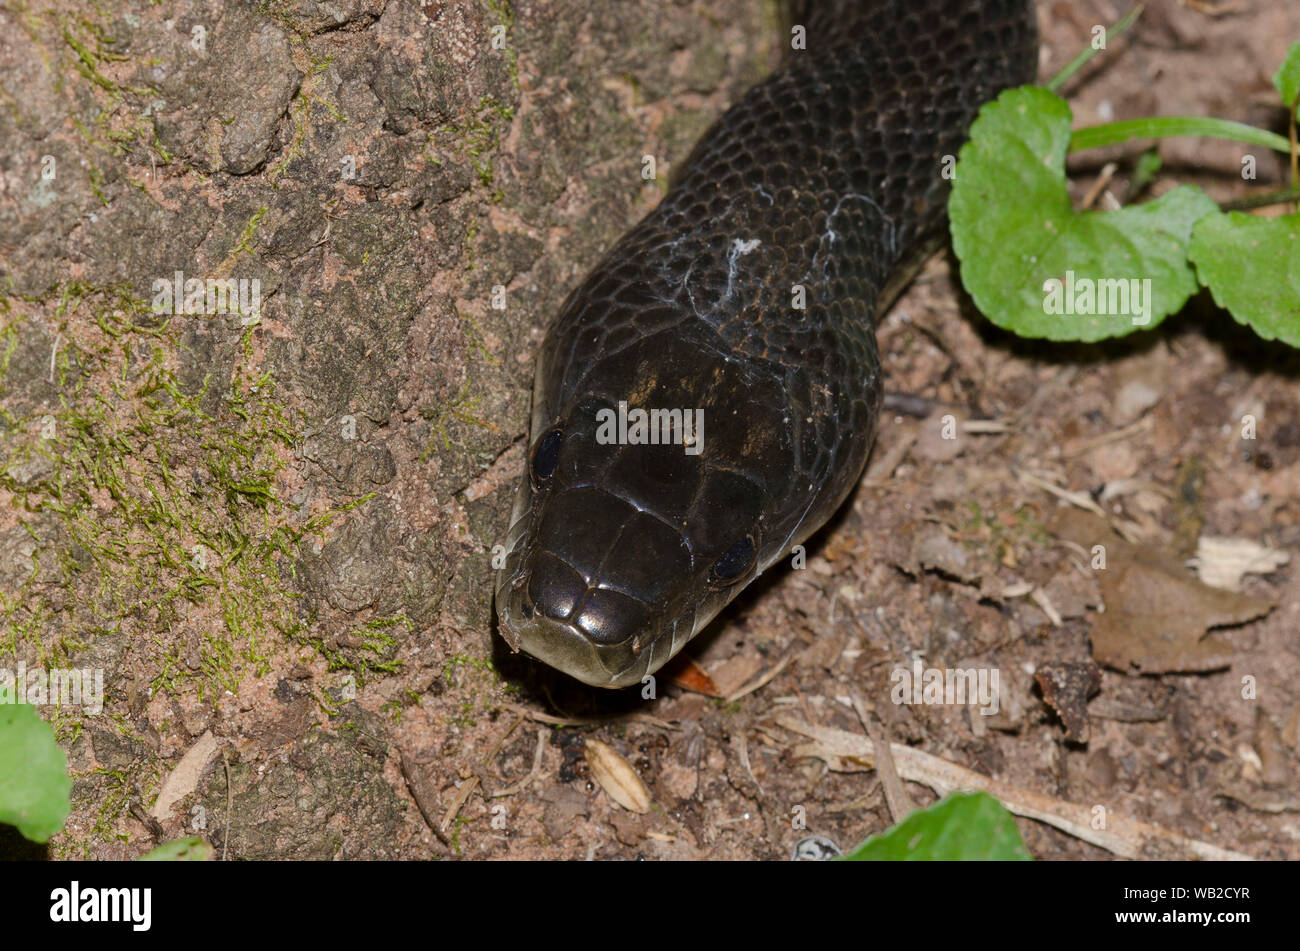 Black Rat Snake, Pantherophis obsoletus Stock Photo